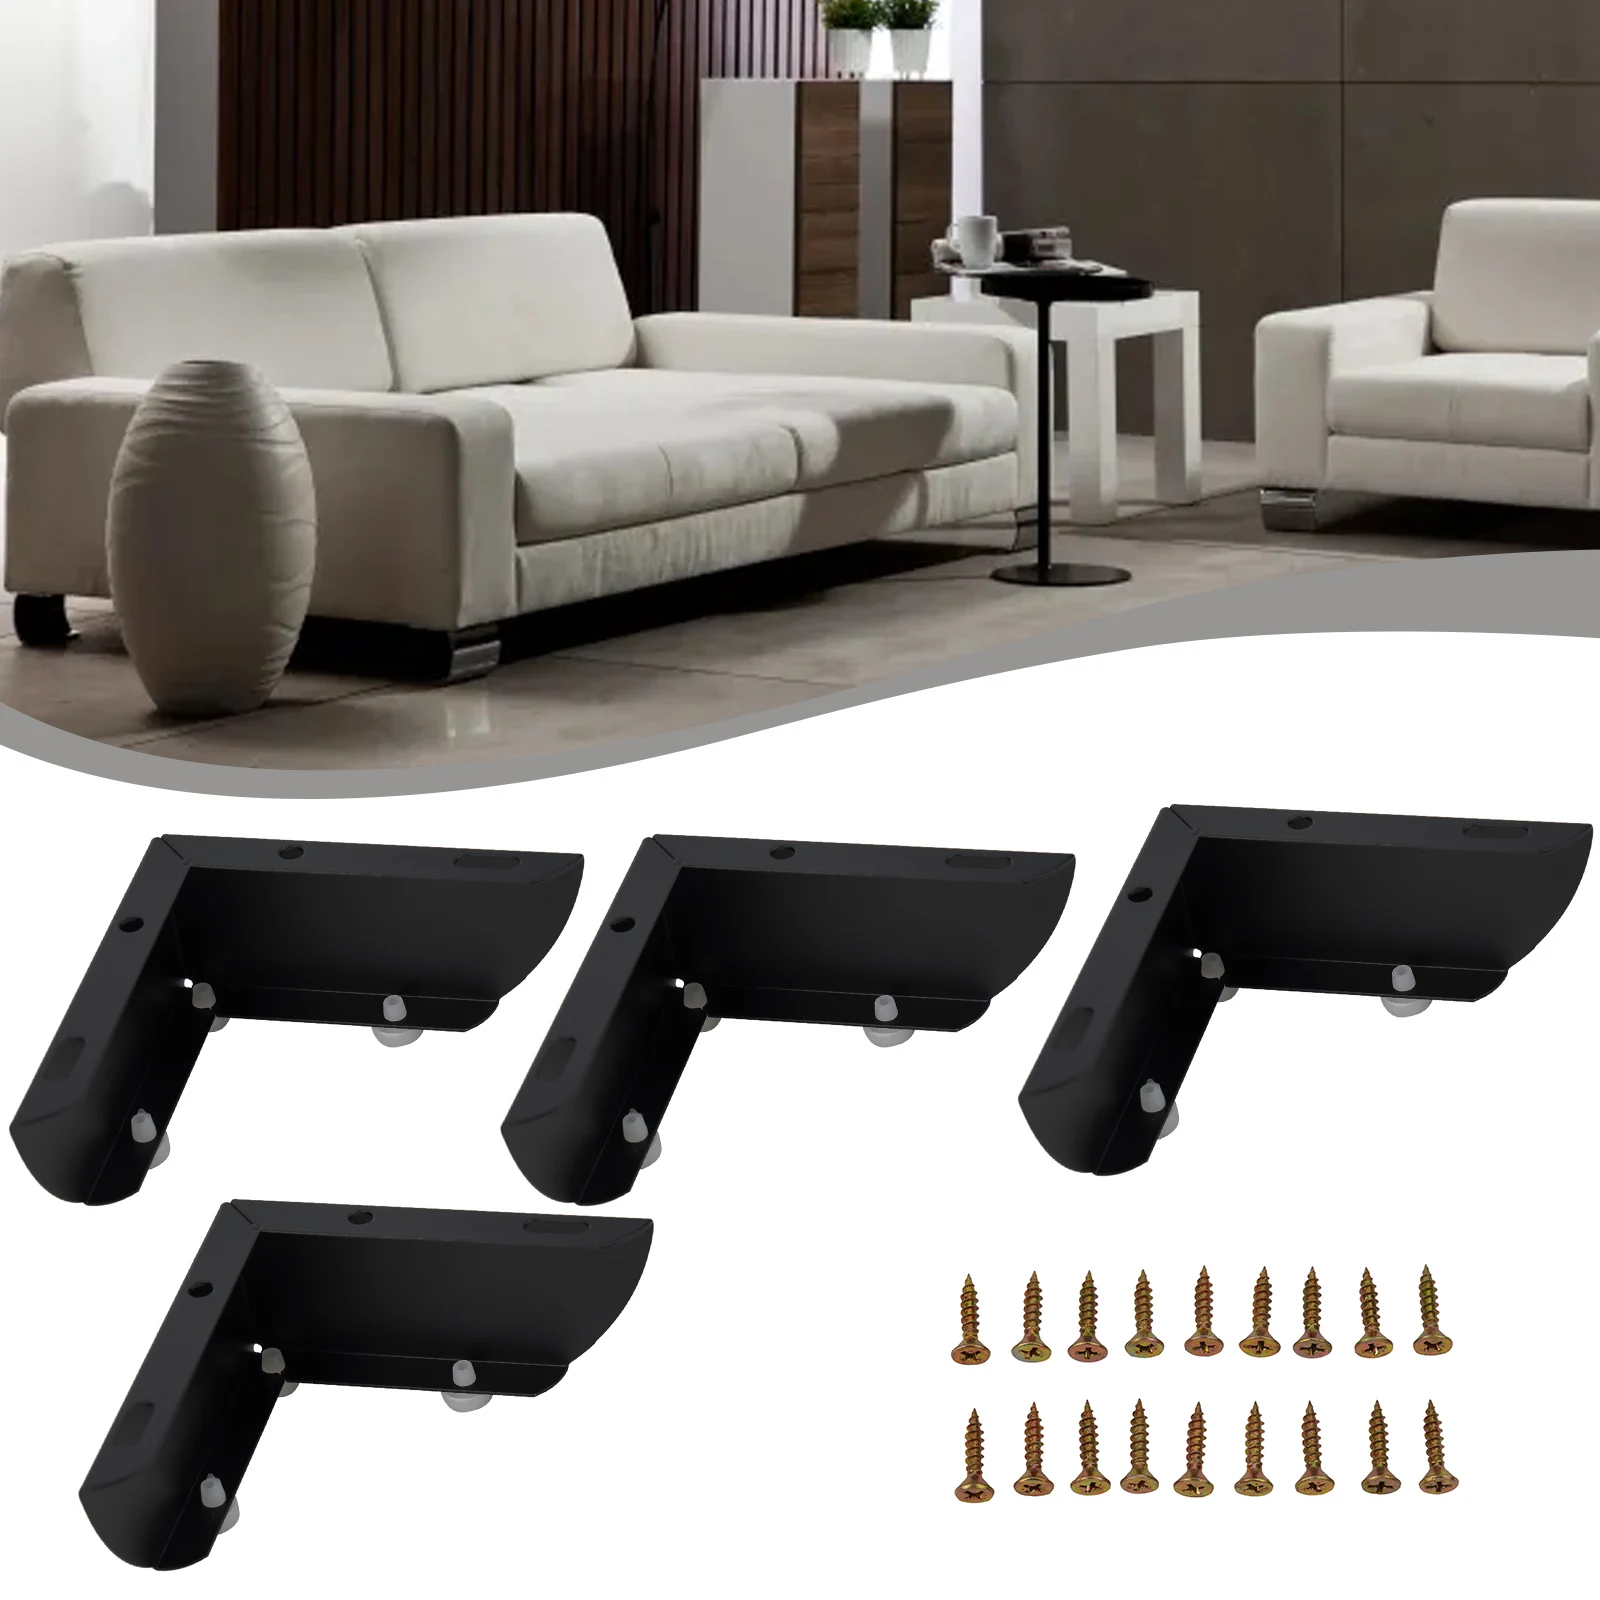 

Металлические ножки для дивана 2 в 1, ножки для мебели, прикроватный столик, простой в использовании, сверхпрочный металлический материал, новый дизайн